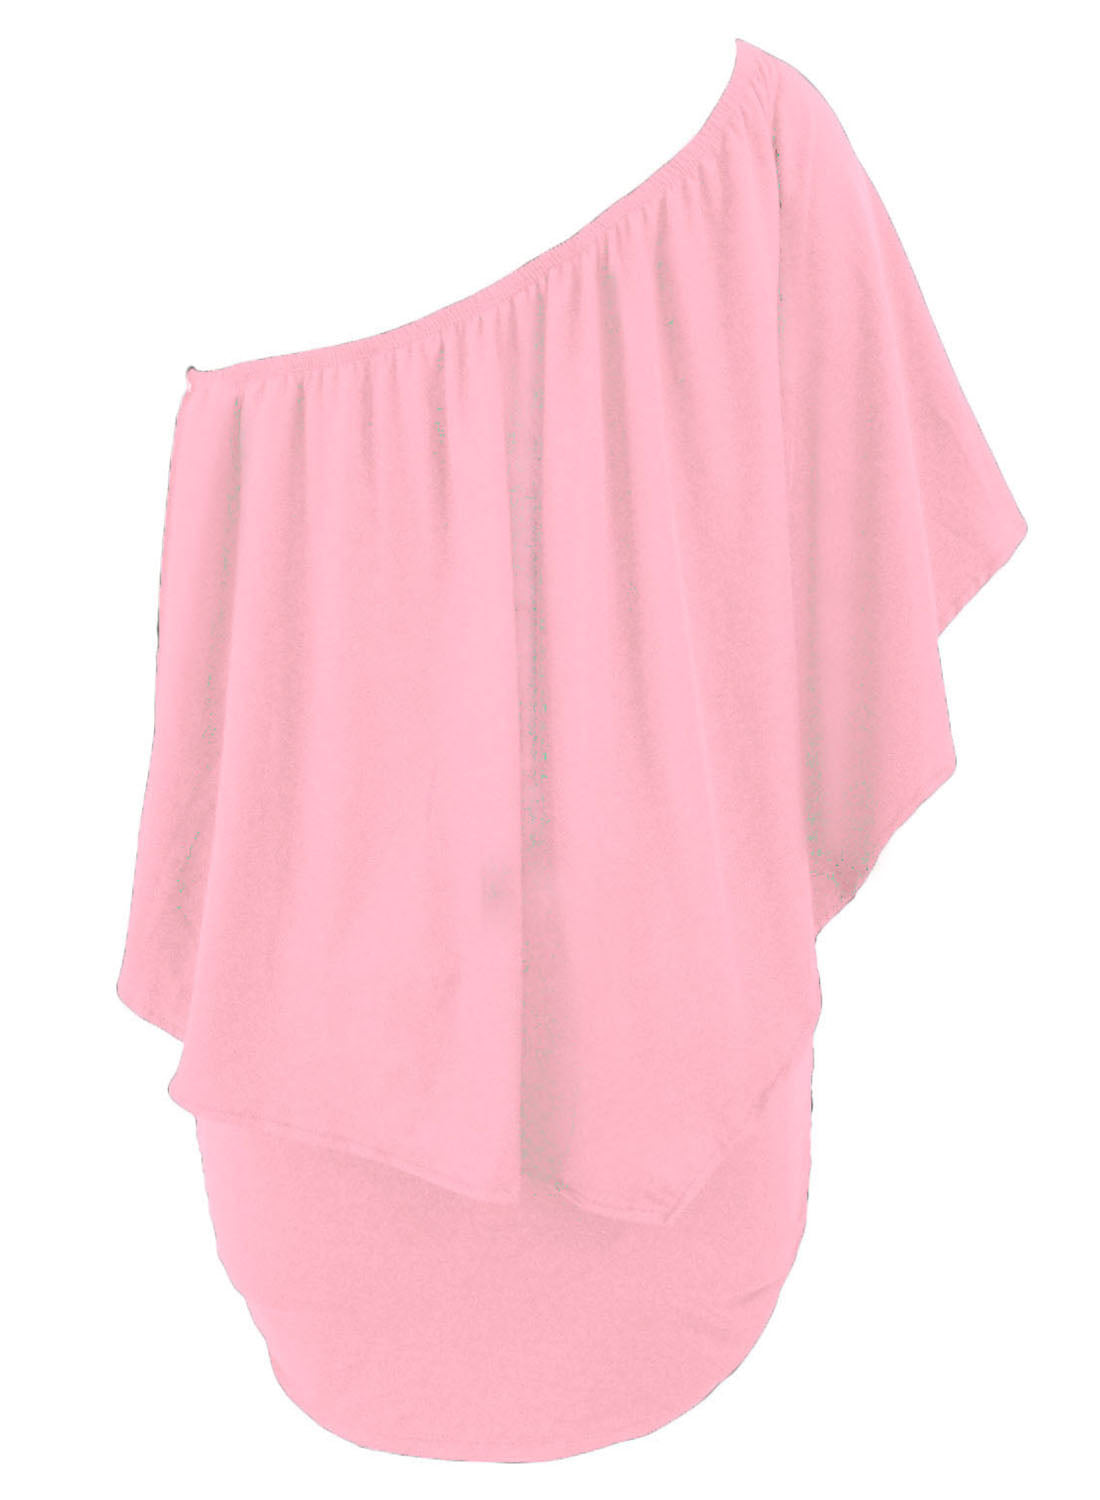 Plus Size Multiple Dressing Layered Pink Mini Poncho Dress Plus Size Dresses JT's Designer Fashion